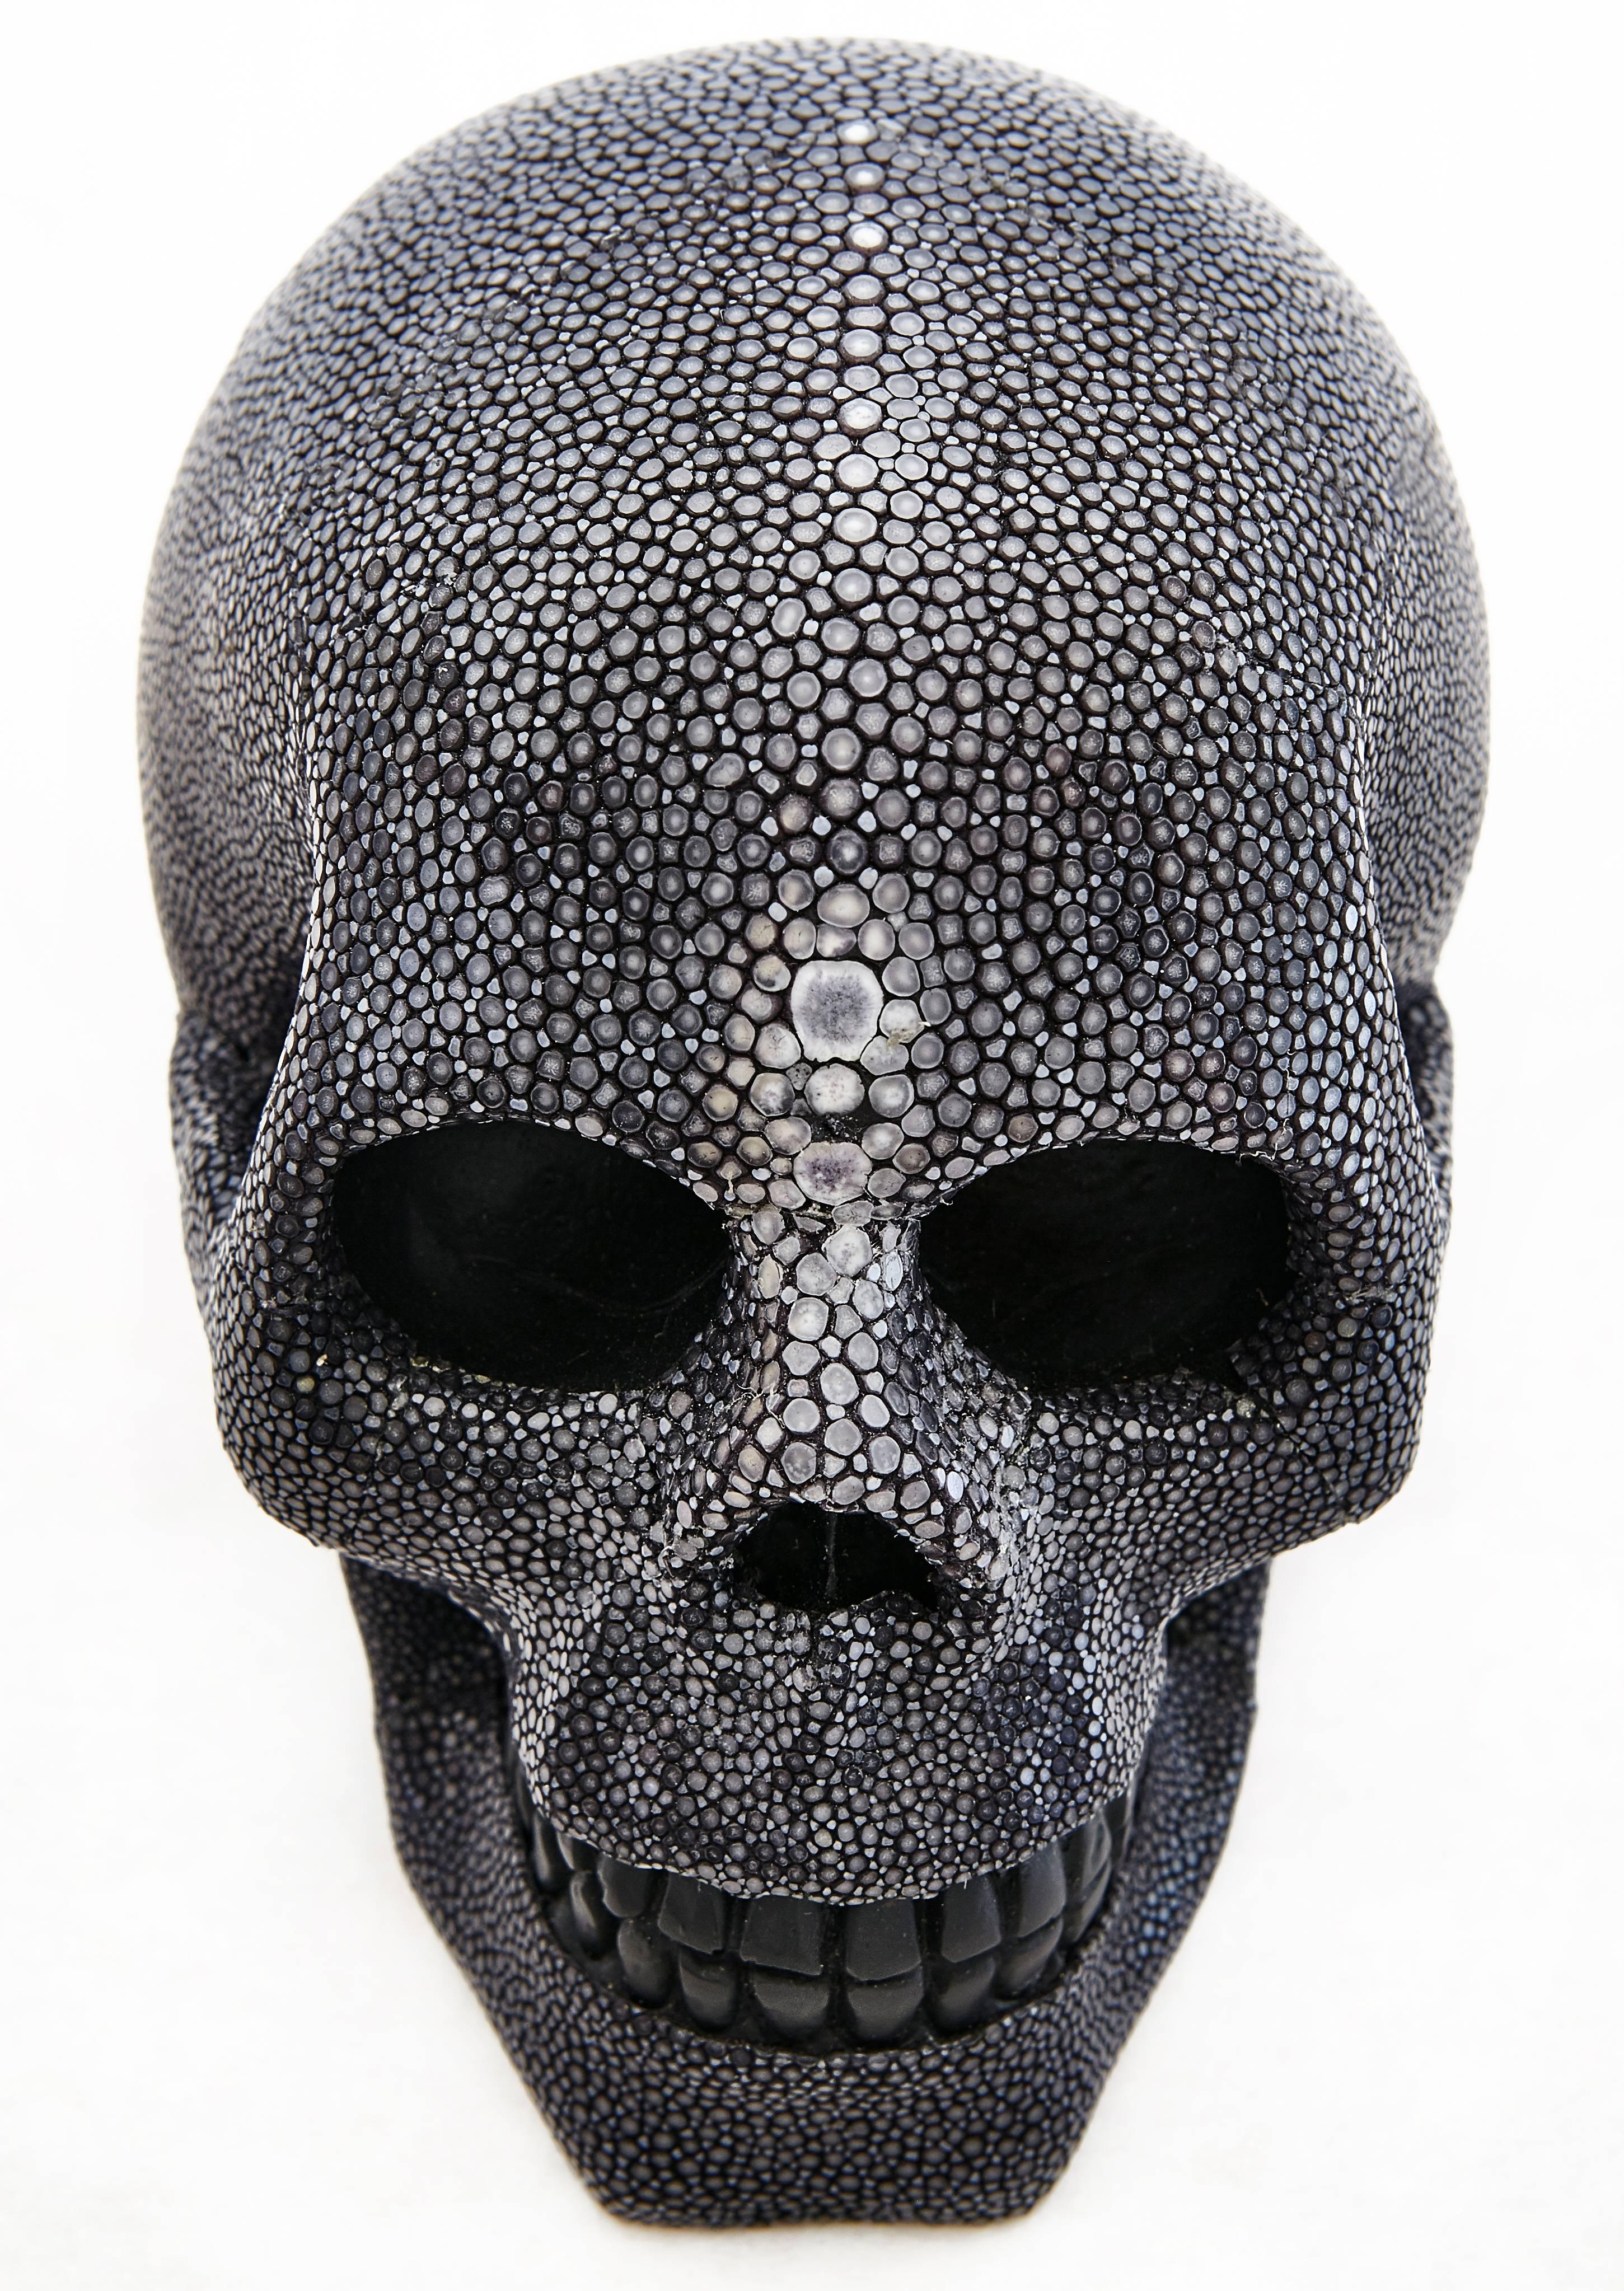 American Cadavre Exquis Mini Shagreen Skull For Sale